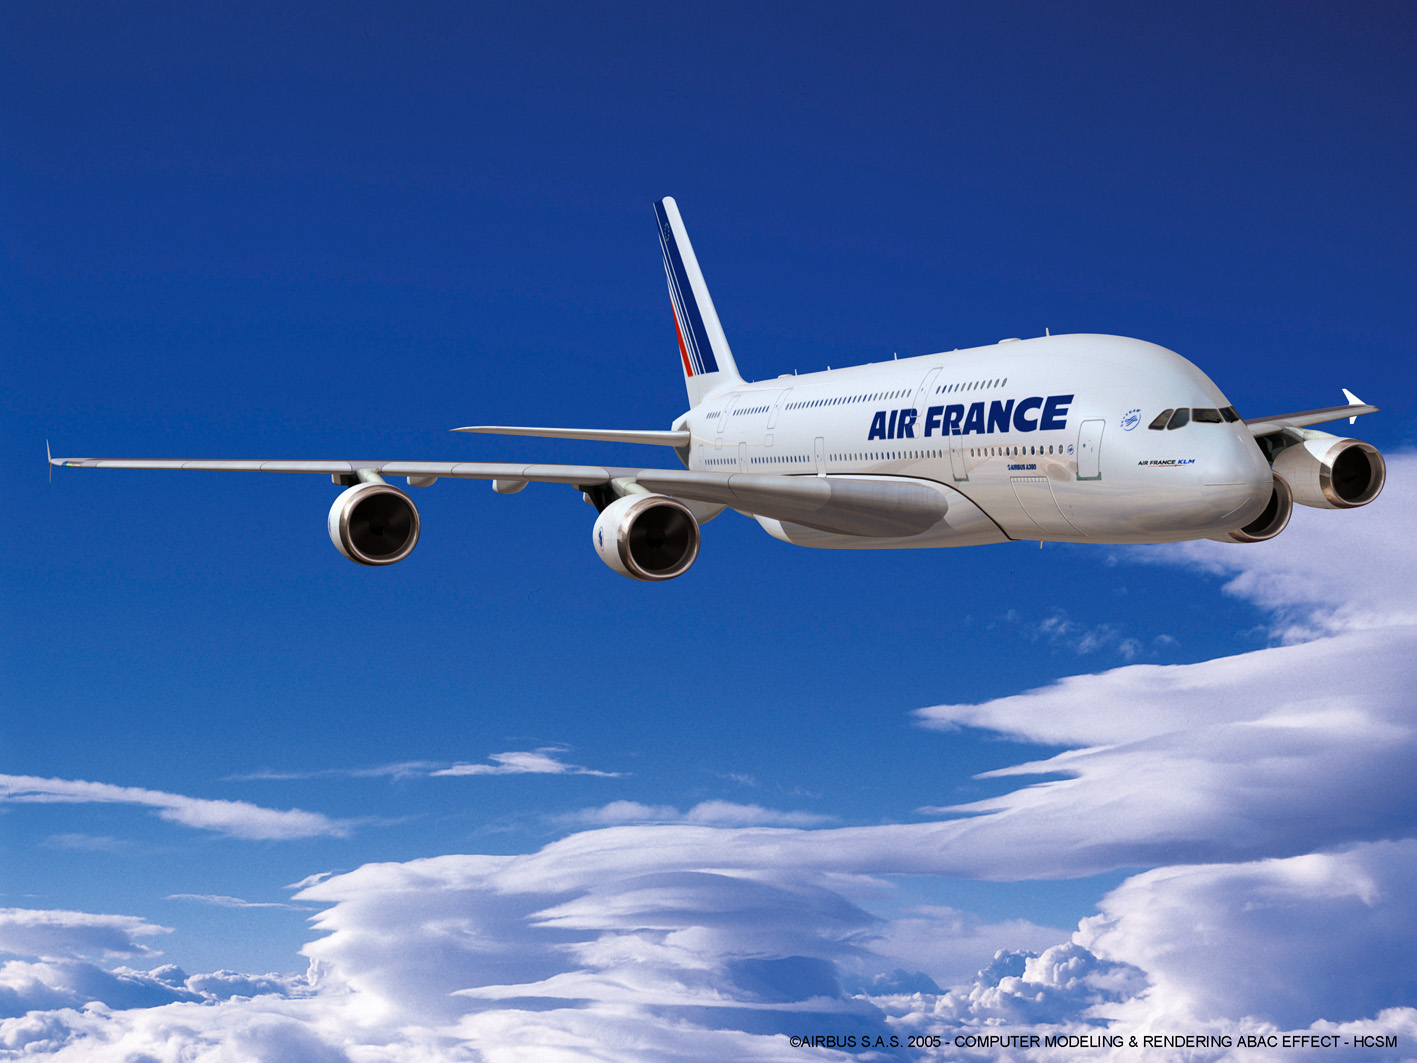 Air France confirme le retour aux bénéfices en 2015